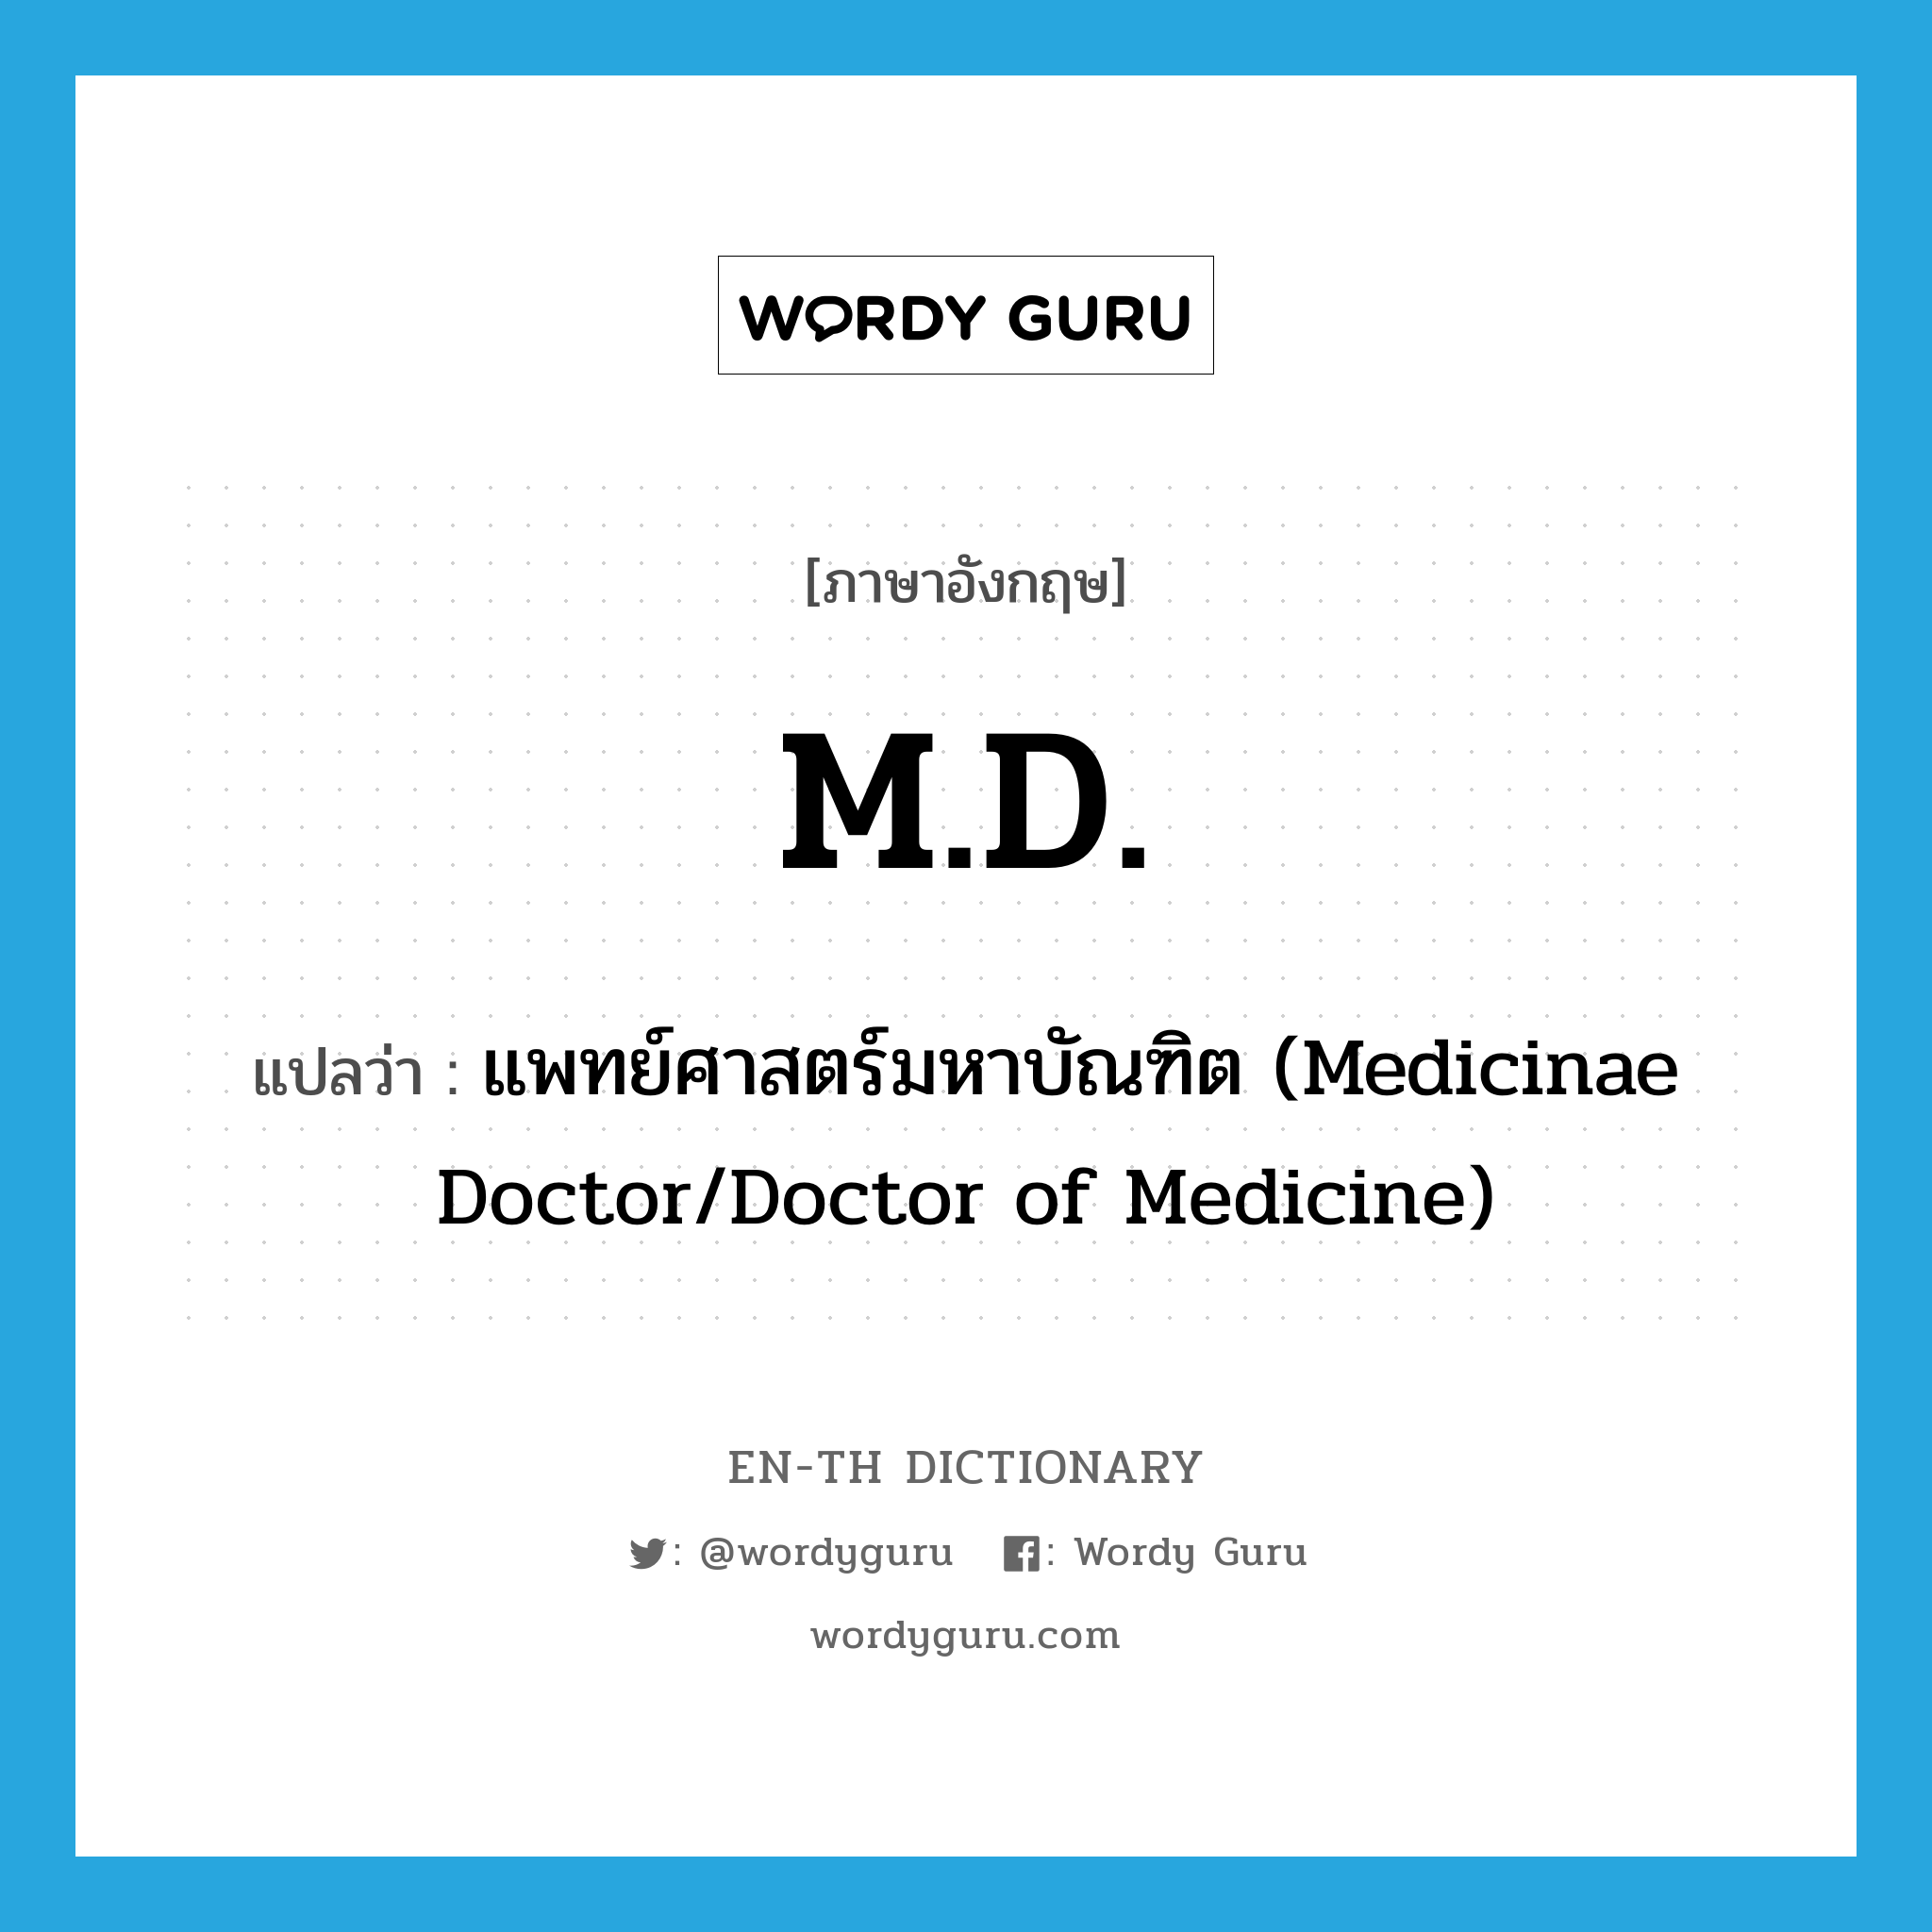 แพทย์ศาสตร์มหาบัณฑิต (Medicinae Doctor/Doctor of Medicine) ภาษาอังกฤษ?, คำศัพท์ภาษาอังกฤษ แพทย์ศาสตร์มหาบัณฑิต (Medicinae Doctor/Doctor of Medicine) แปลว่า M.D. ประเภท ABBR หมวด ABBR